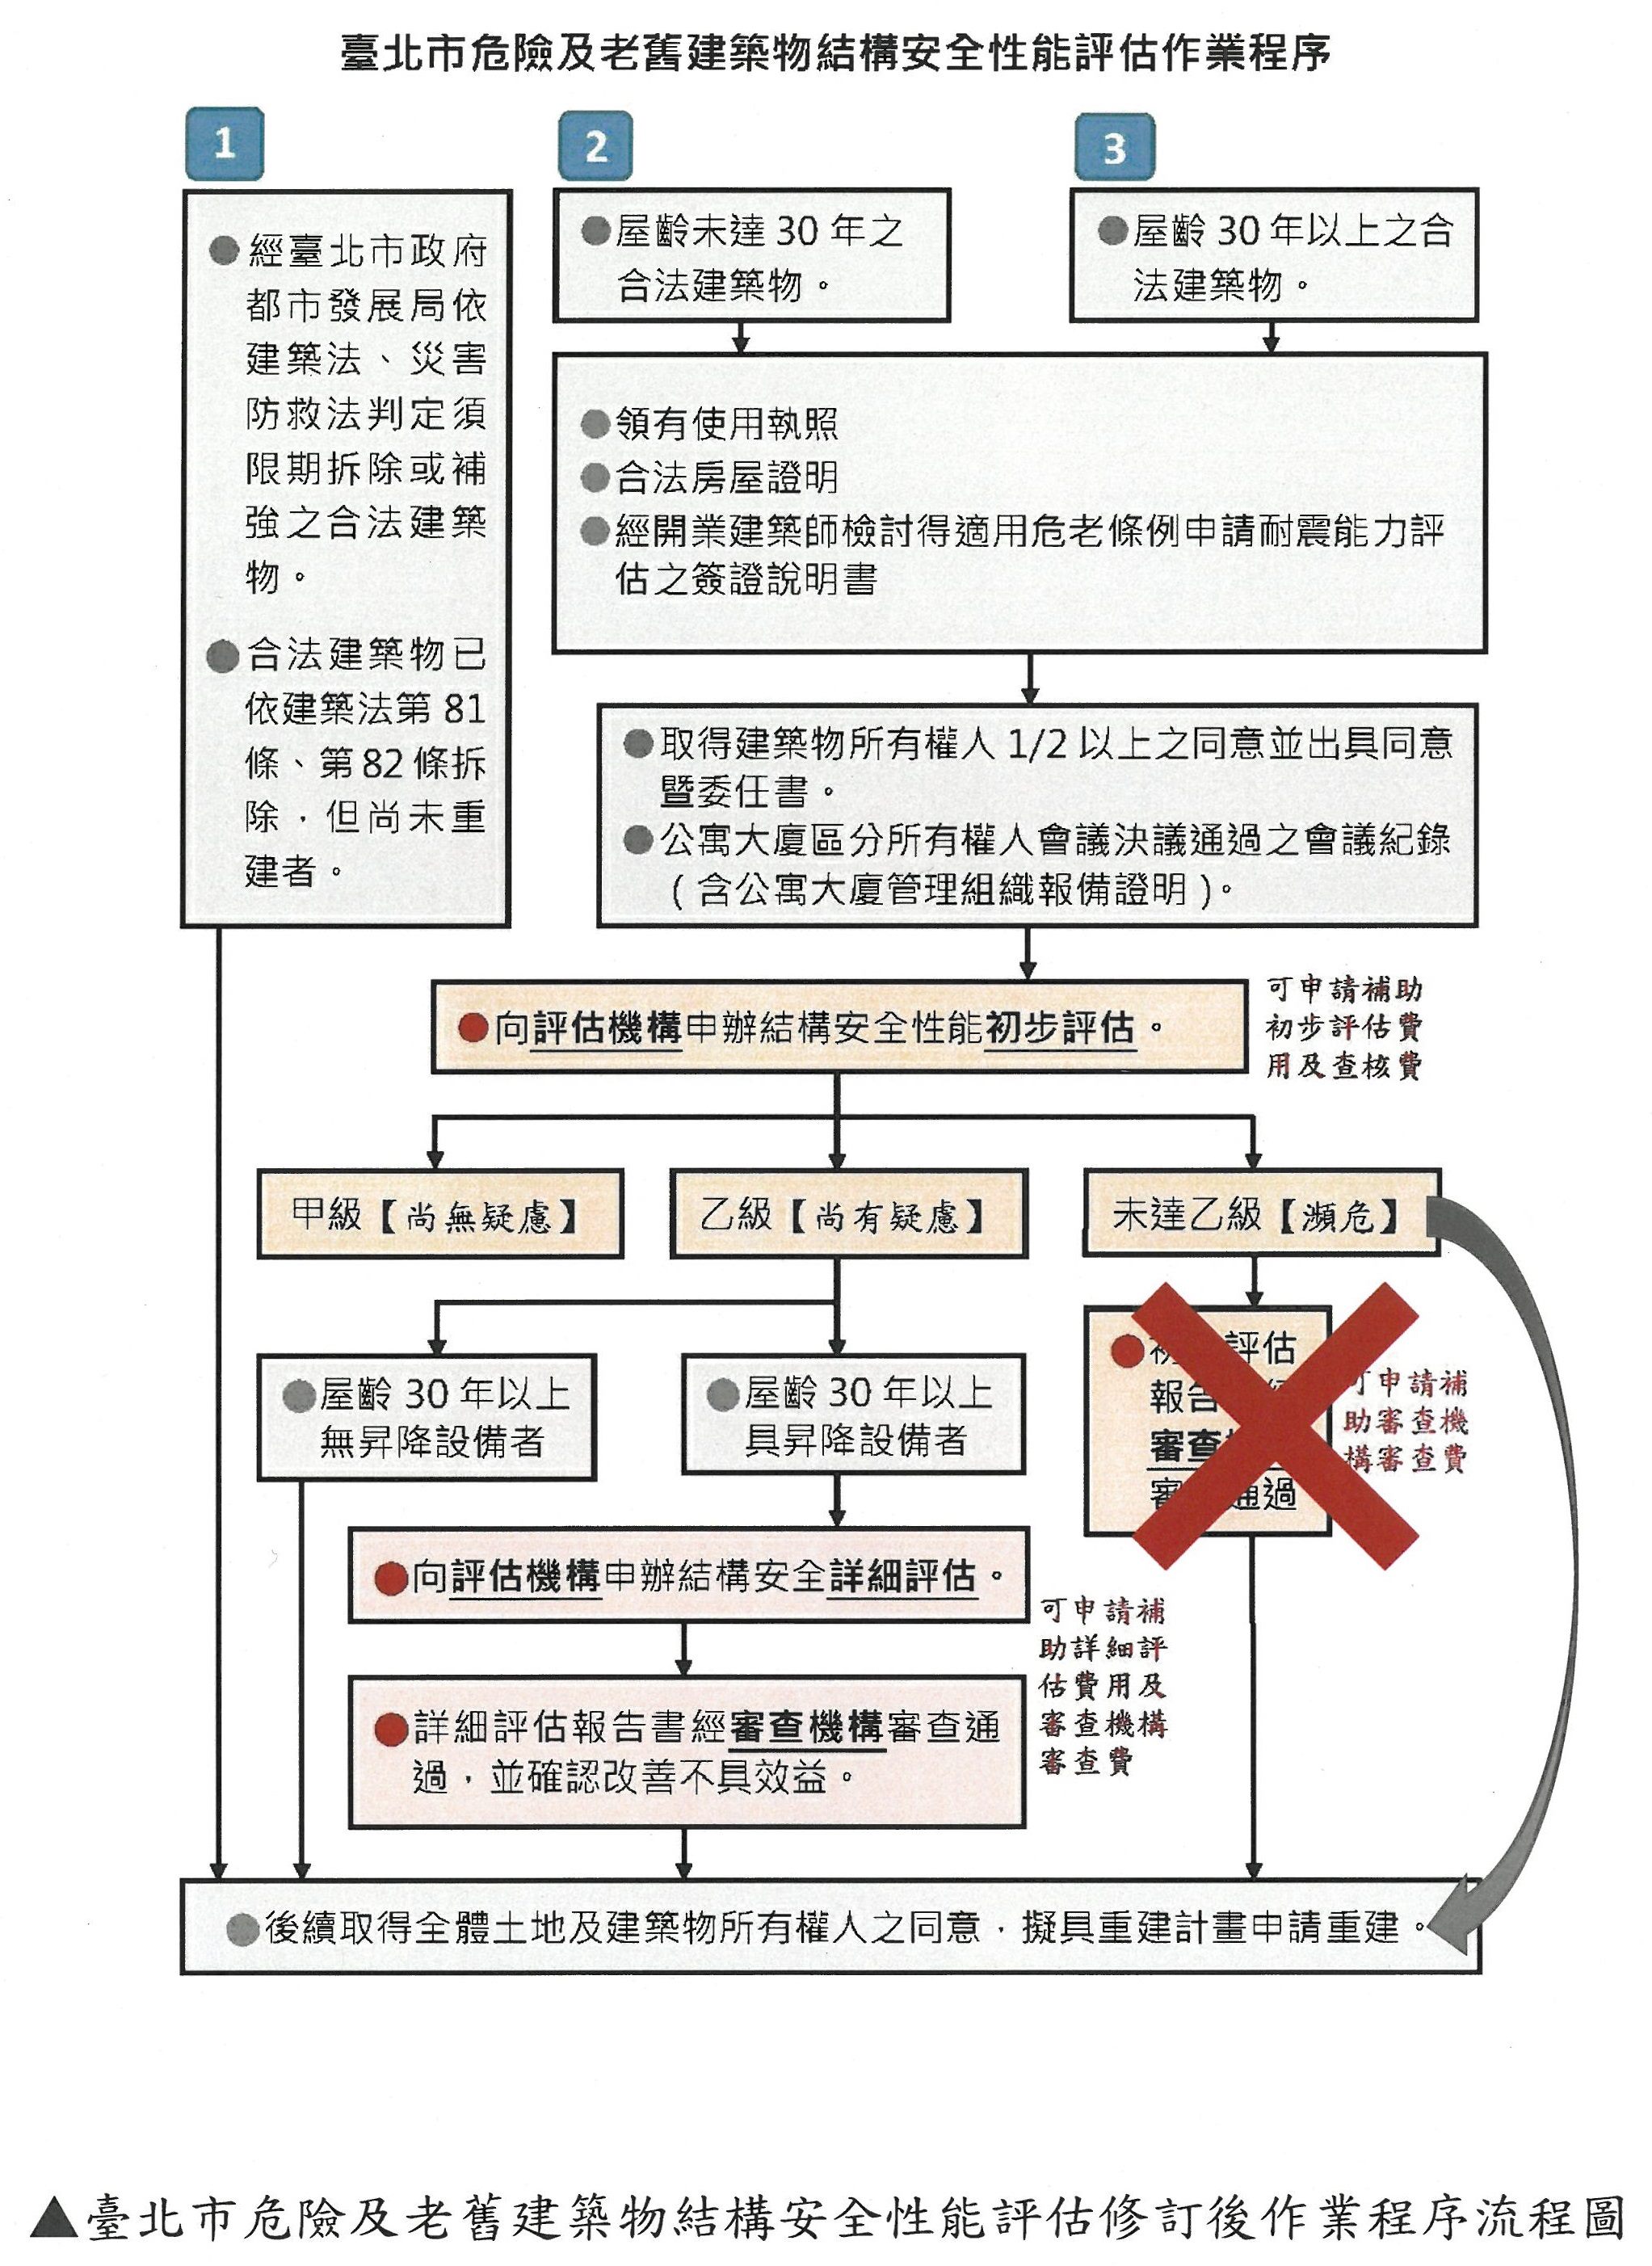 臺北市危險及老舊建築物結構安全性能評估修訂後作業程序流程圖